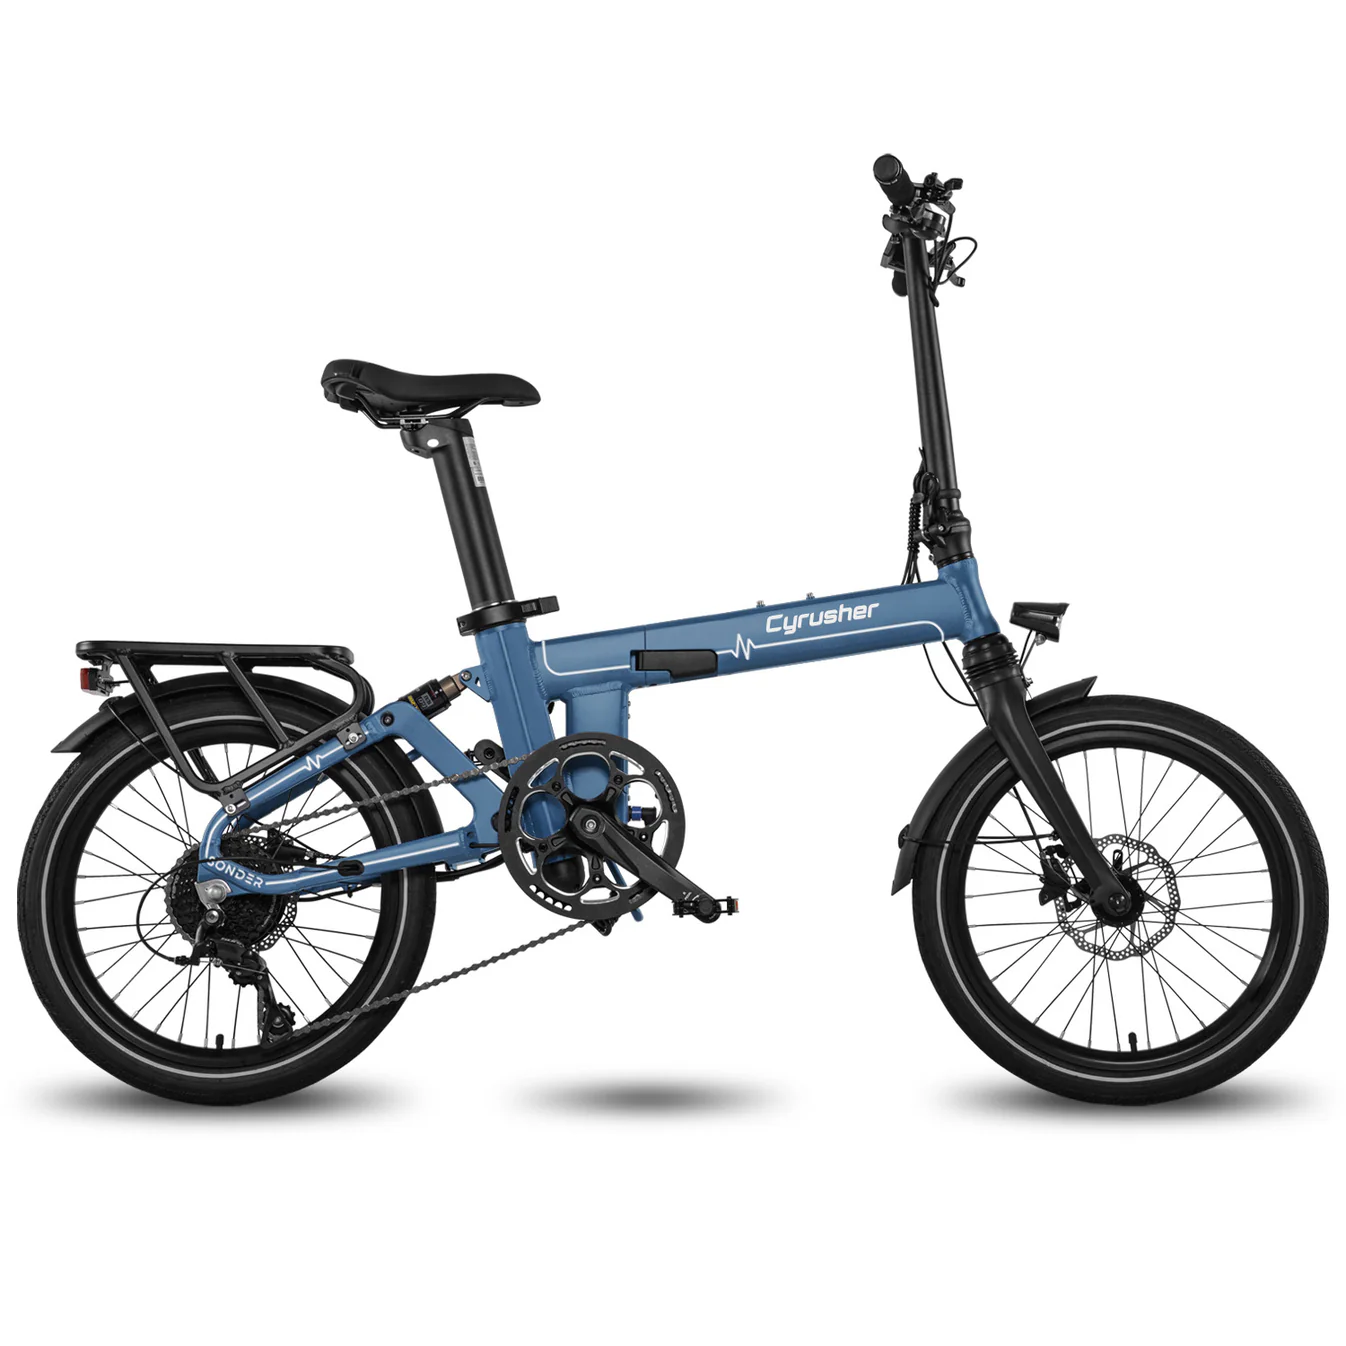 Sonder Cyrusher – Vélo électrique pliant